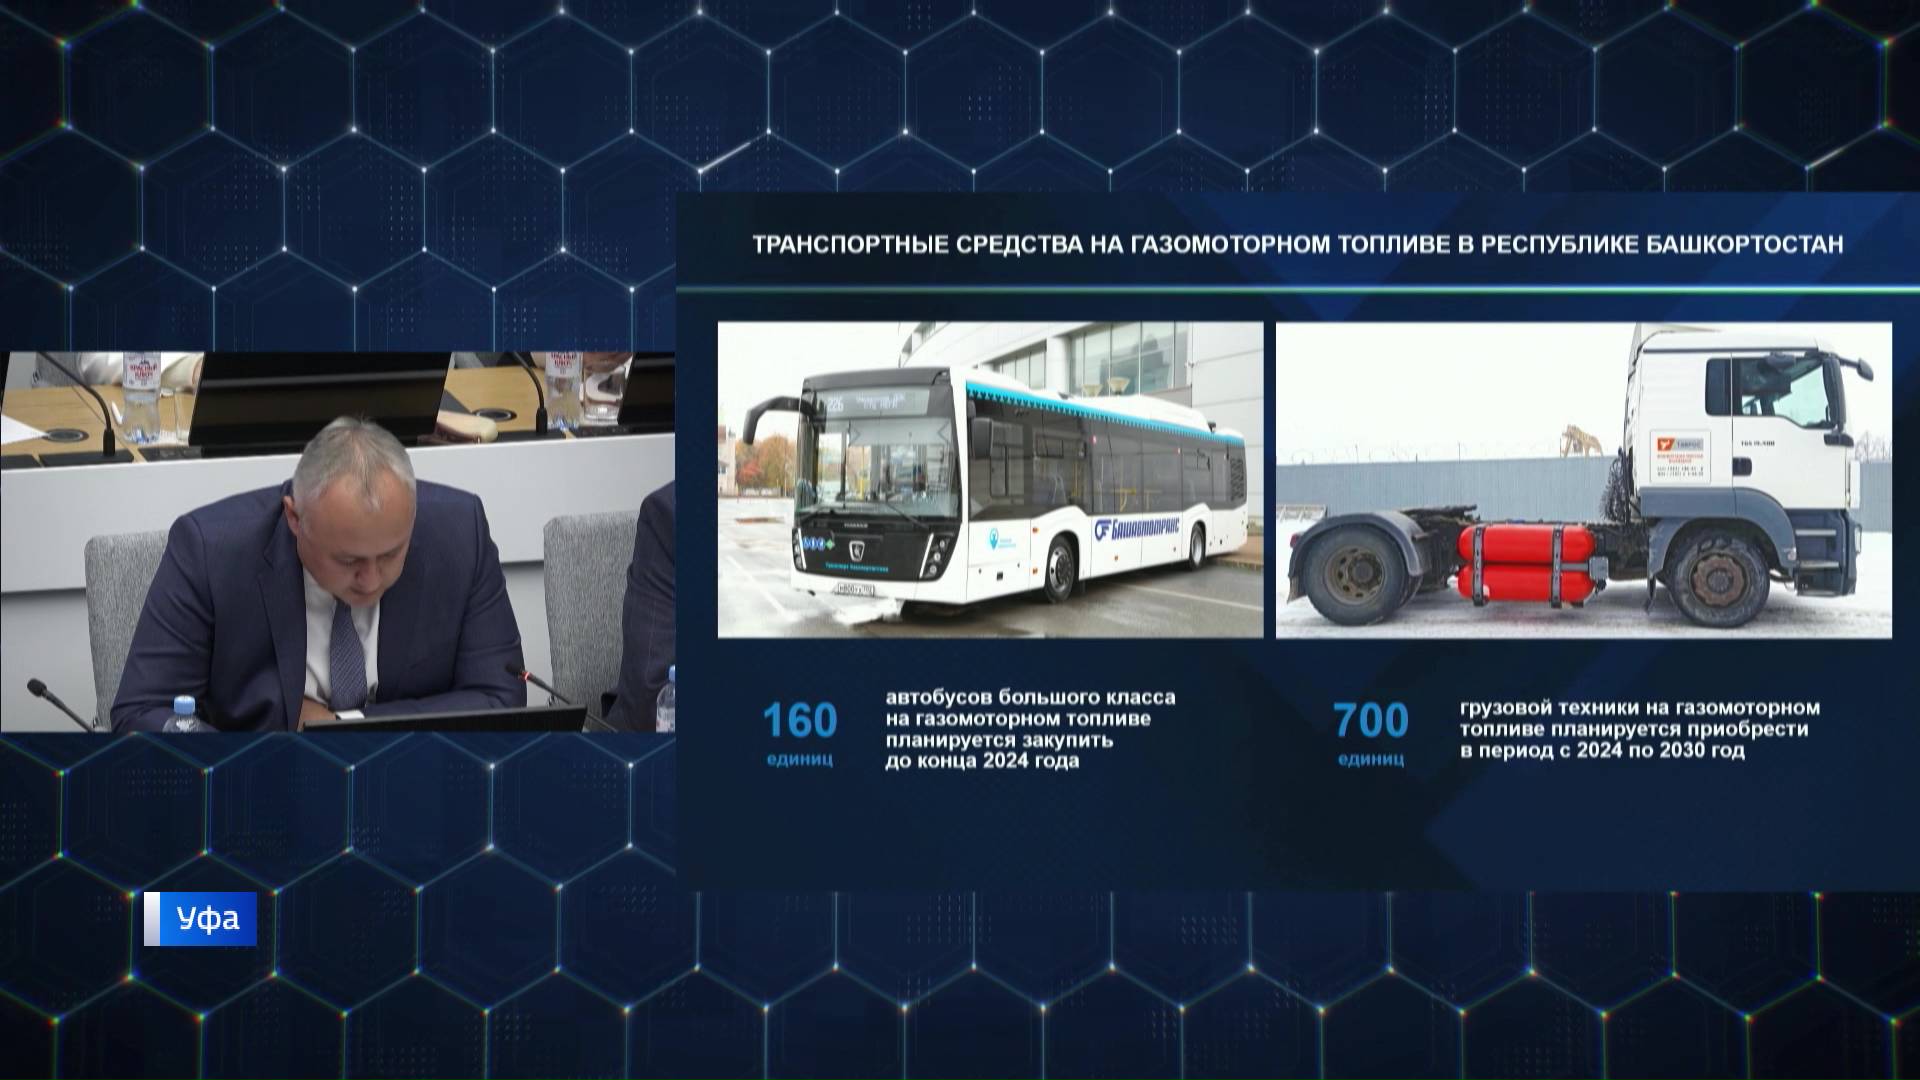 В Башкирии более 2 тысяч единиц транспорта переведут на метан до конца 2024 года - сюжет "Вестей"